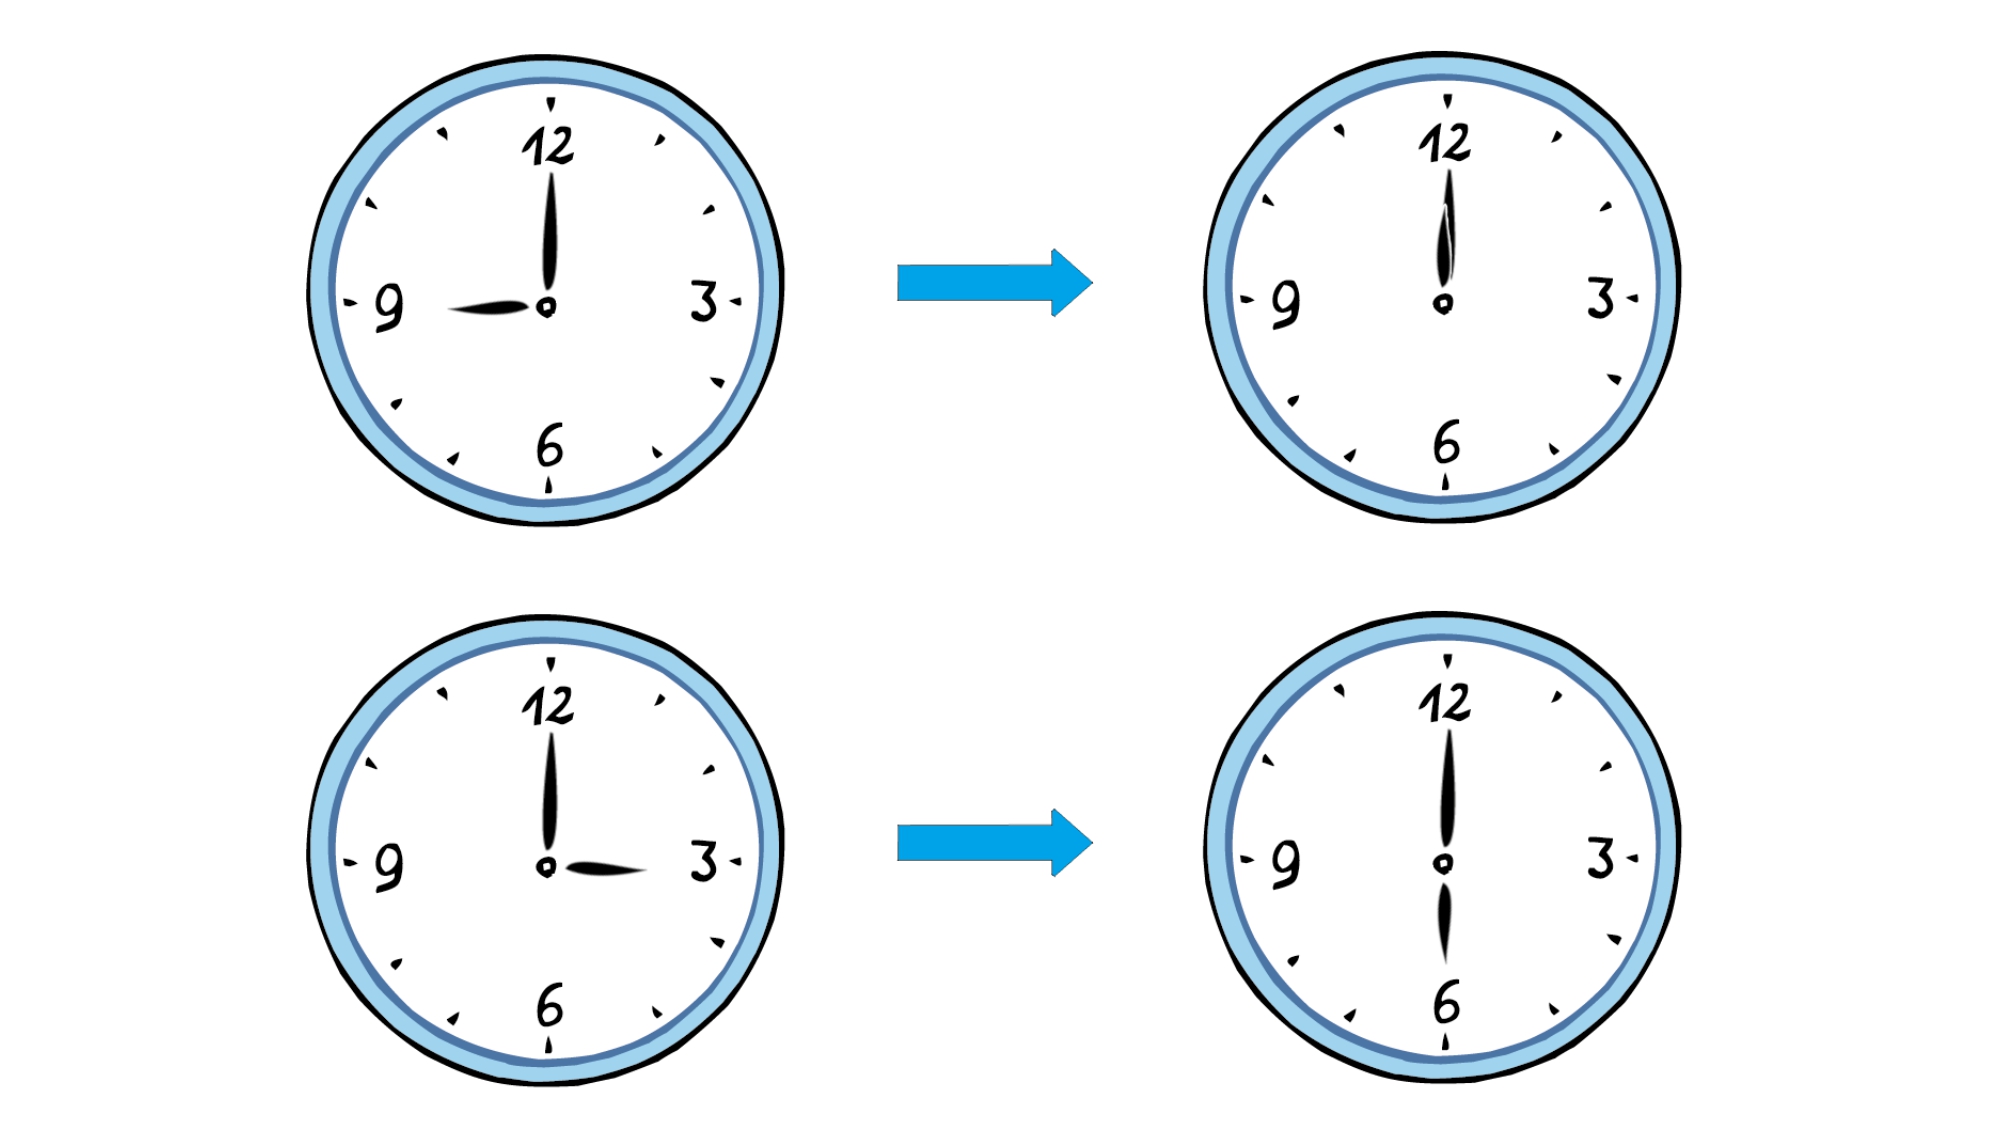 Grafik: verschiedene Zeitangaben auf insgesamt vier Wanduhren